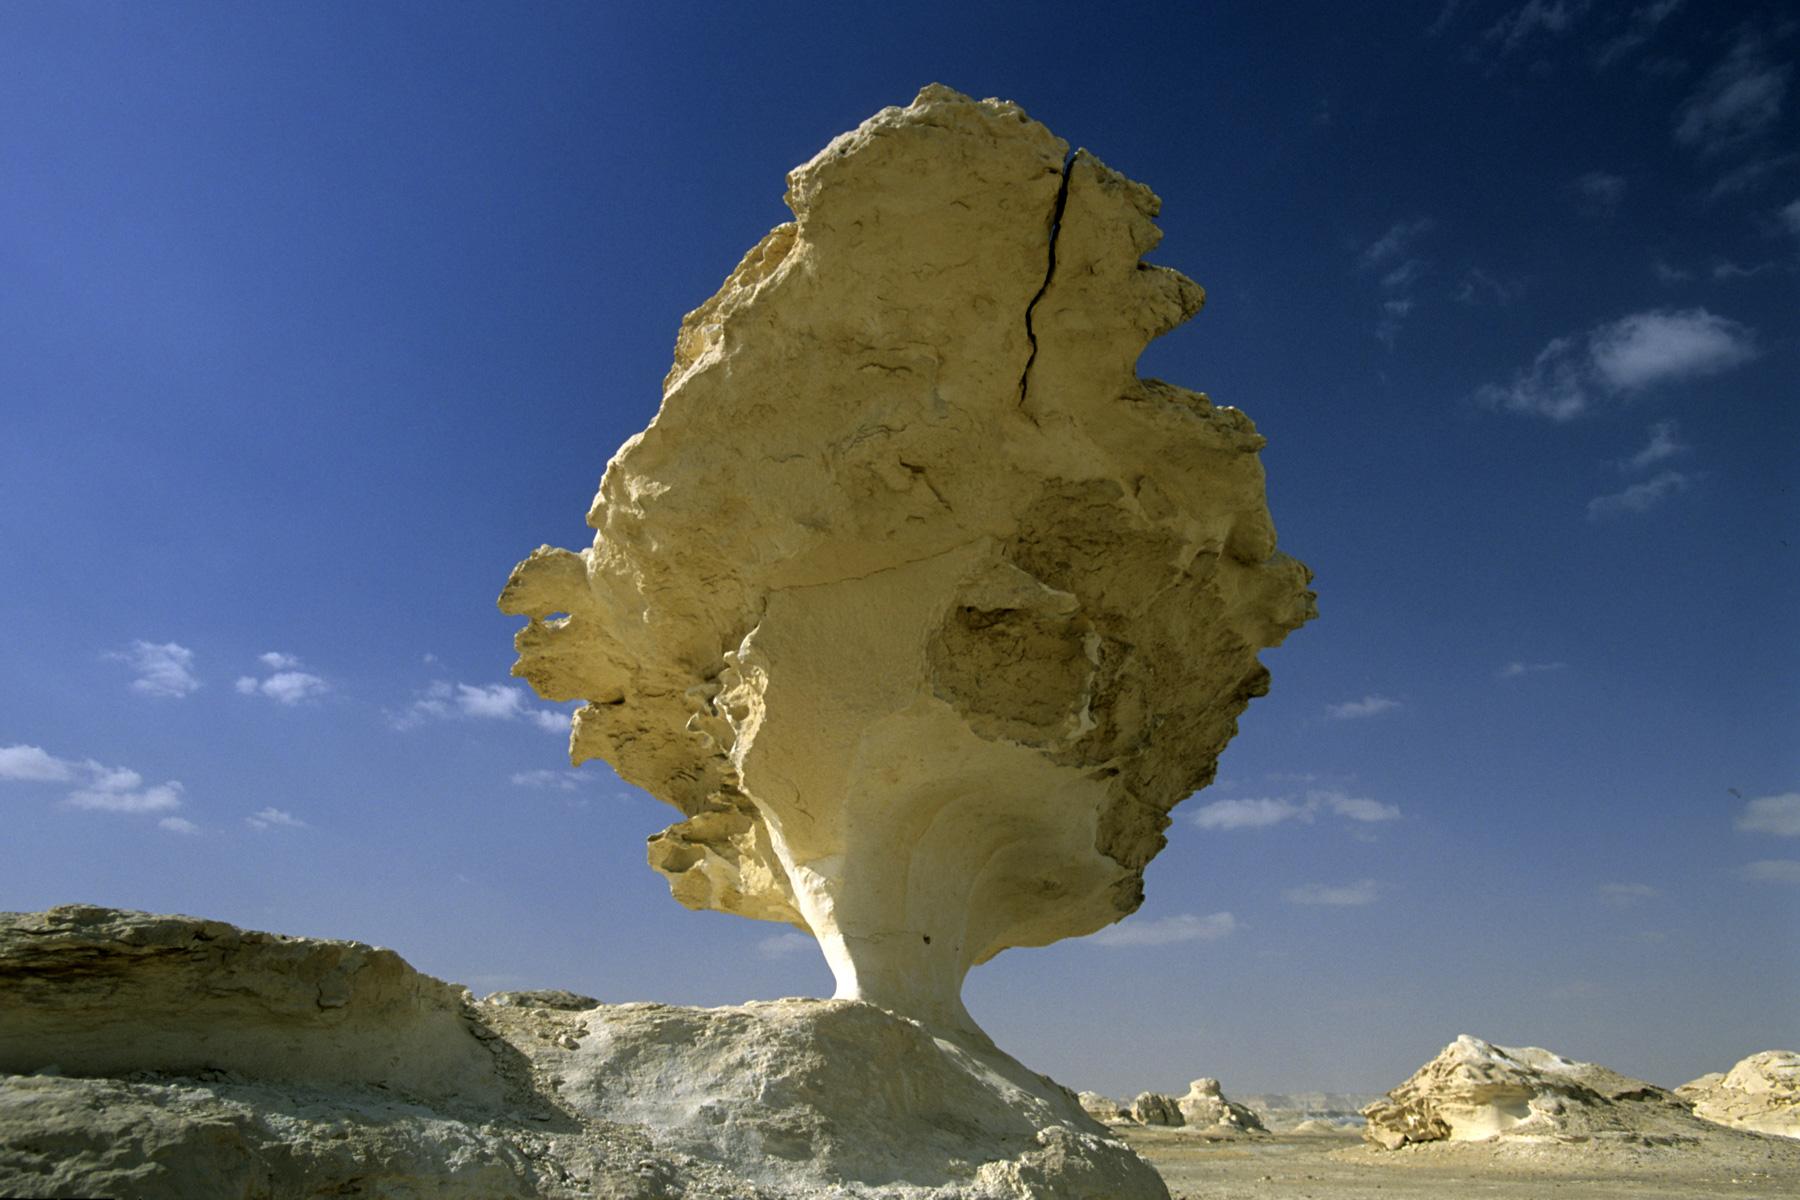 New White Desert. Rocher de craie sculpté par le vent.